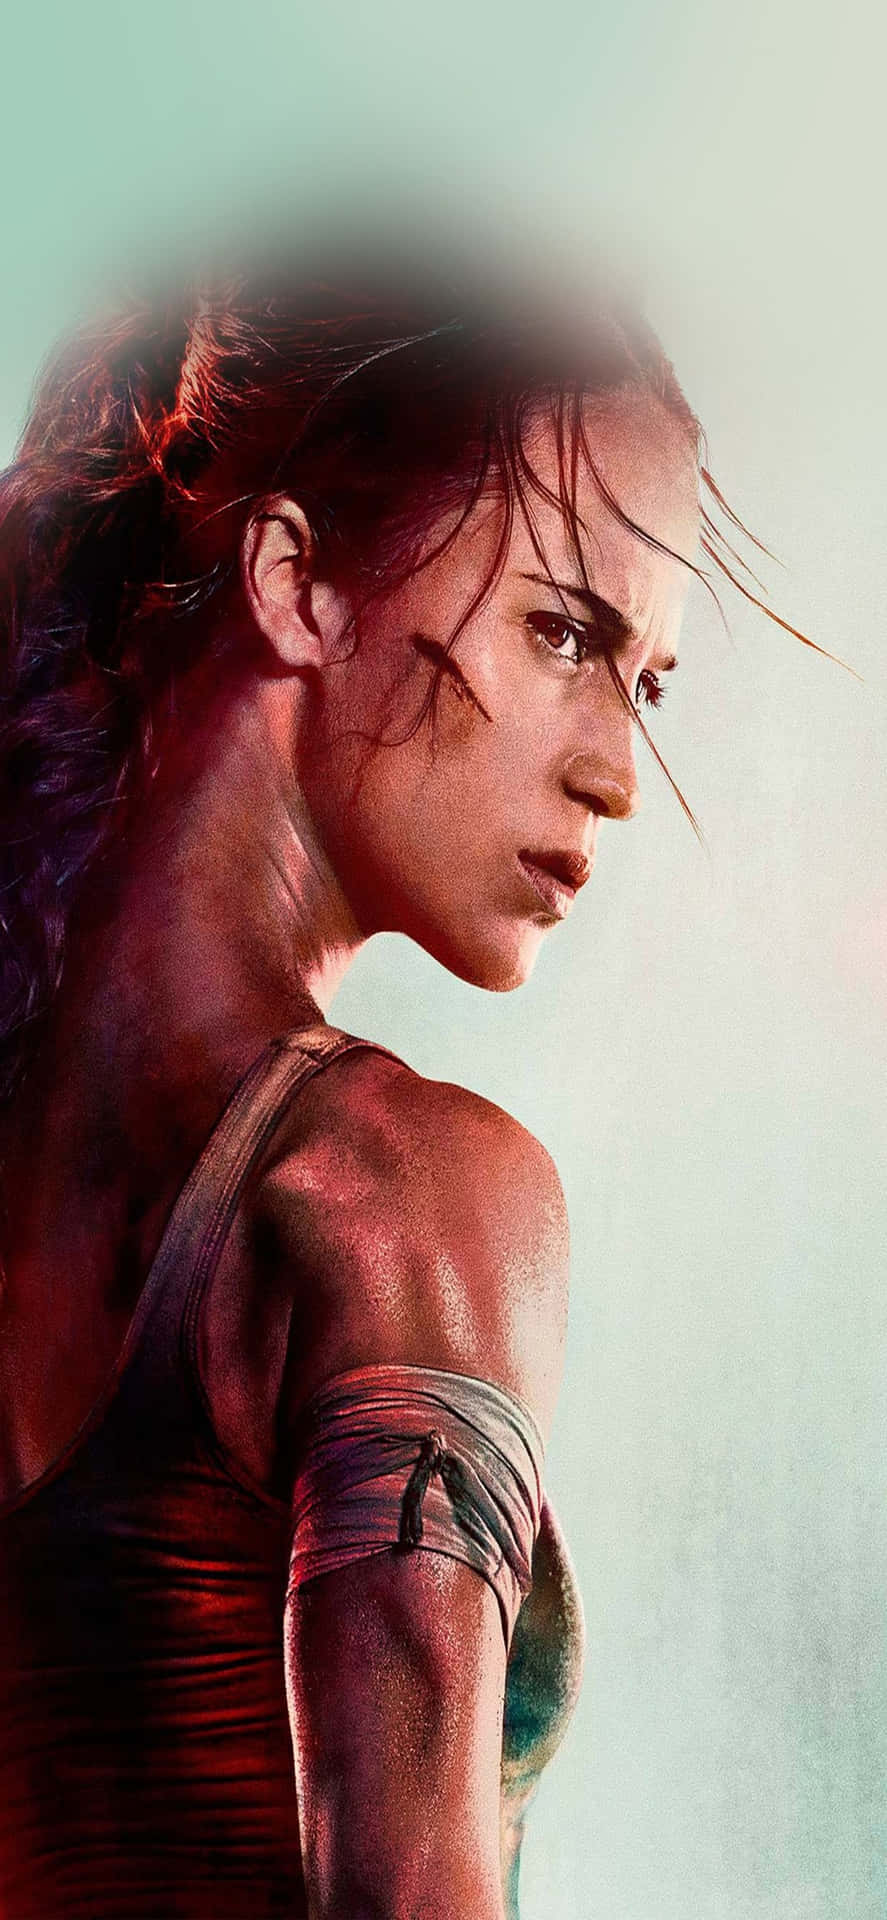 Prepáratepara El Ascenso De Rise Of The Tomb Raider En El Iphone Xs Max.